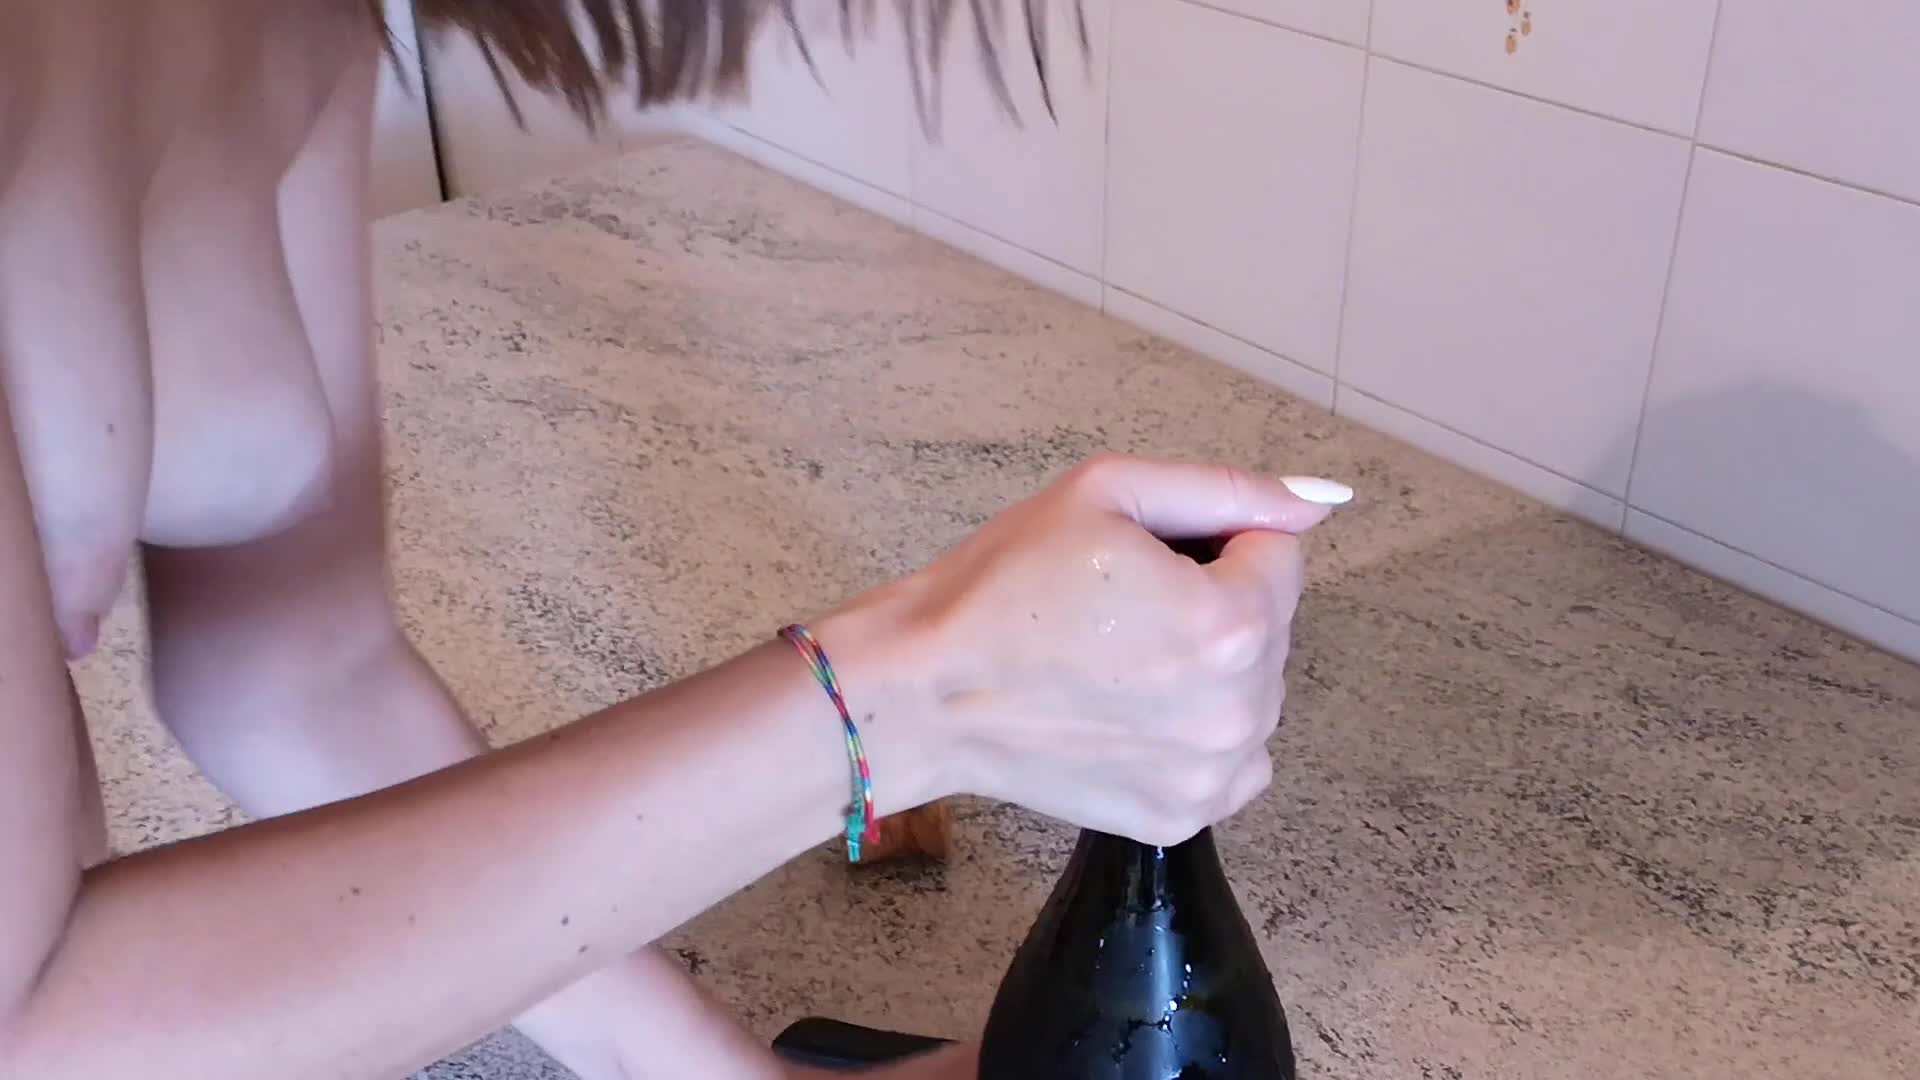 Draining champagne bottle